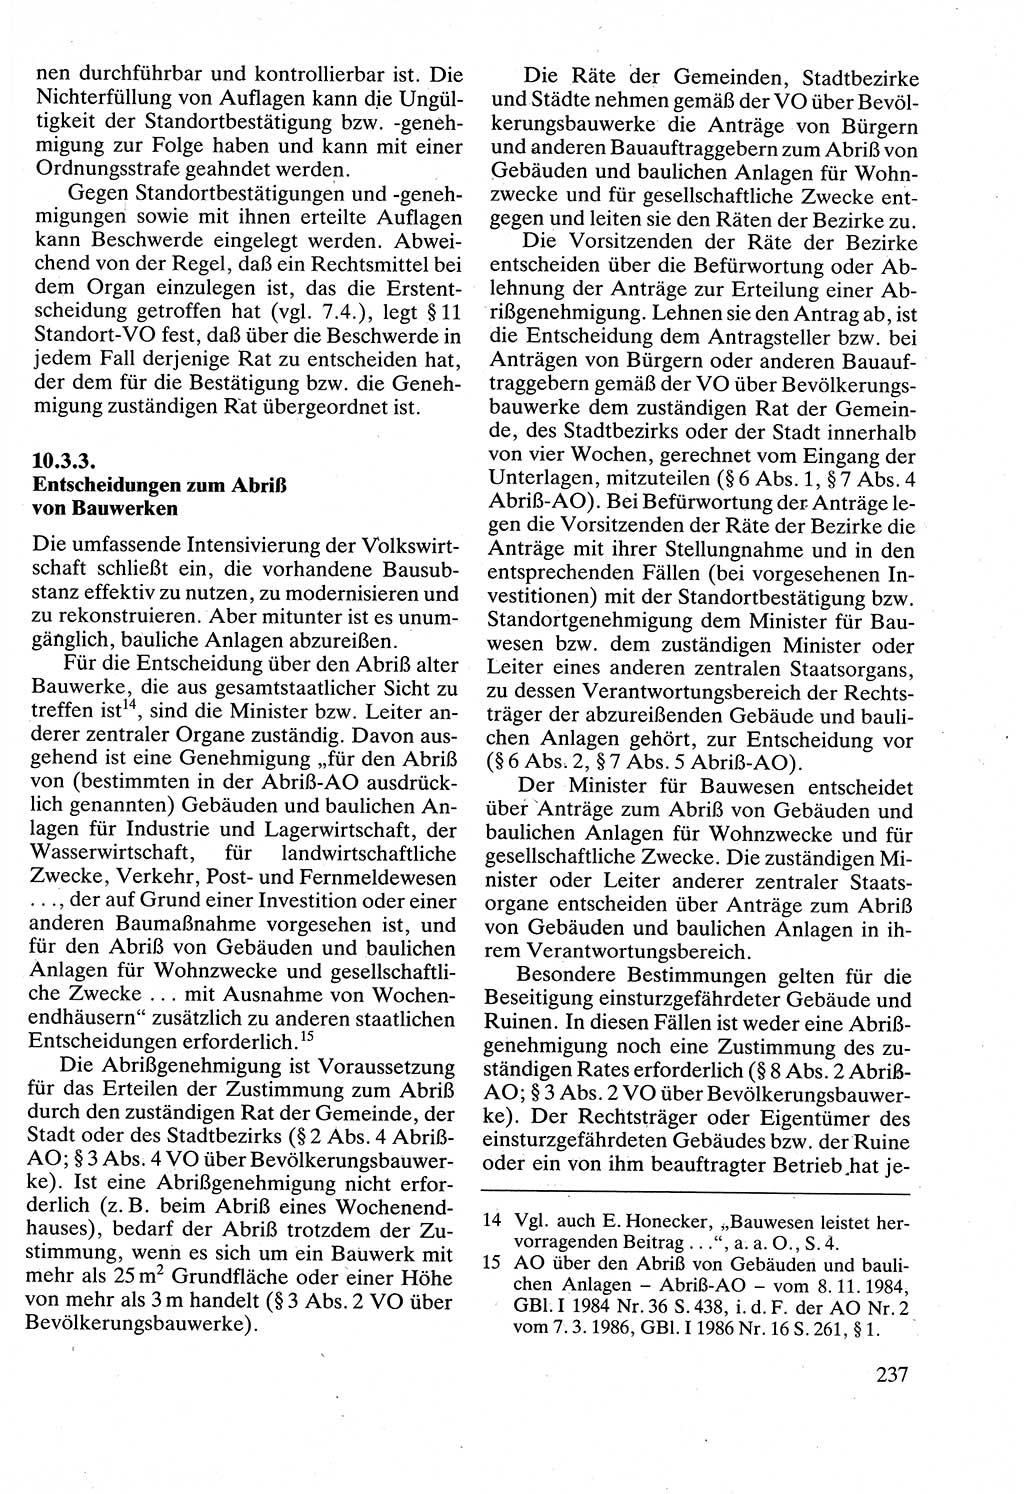 Verwaltungsrecht [Deutsche Demokratische Republik (DDR)], Lehrbuch 1988, Seite 237 (Verw.-R. DDR Lb. 1988, S. 237)